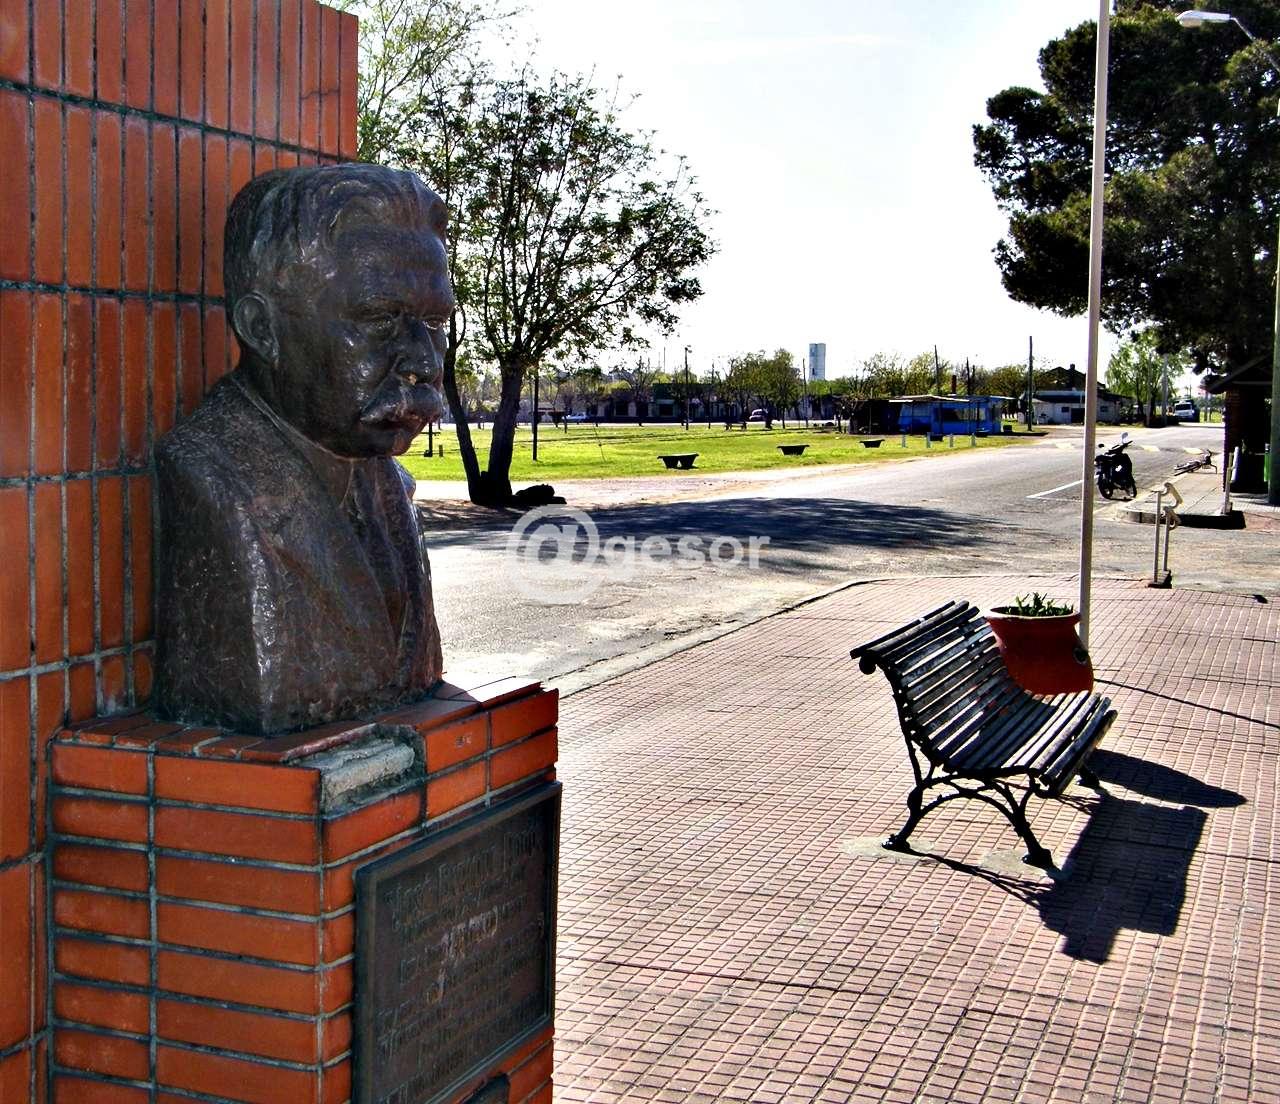 En Soriano  será  el  17  de  marzo  próximo,  con actividades culturales  y un homenaje   junto al busto que  recuerda  su figura en la  localidad que tomó su nombre.